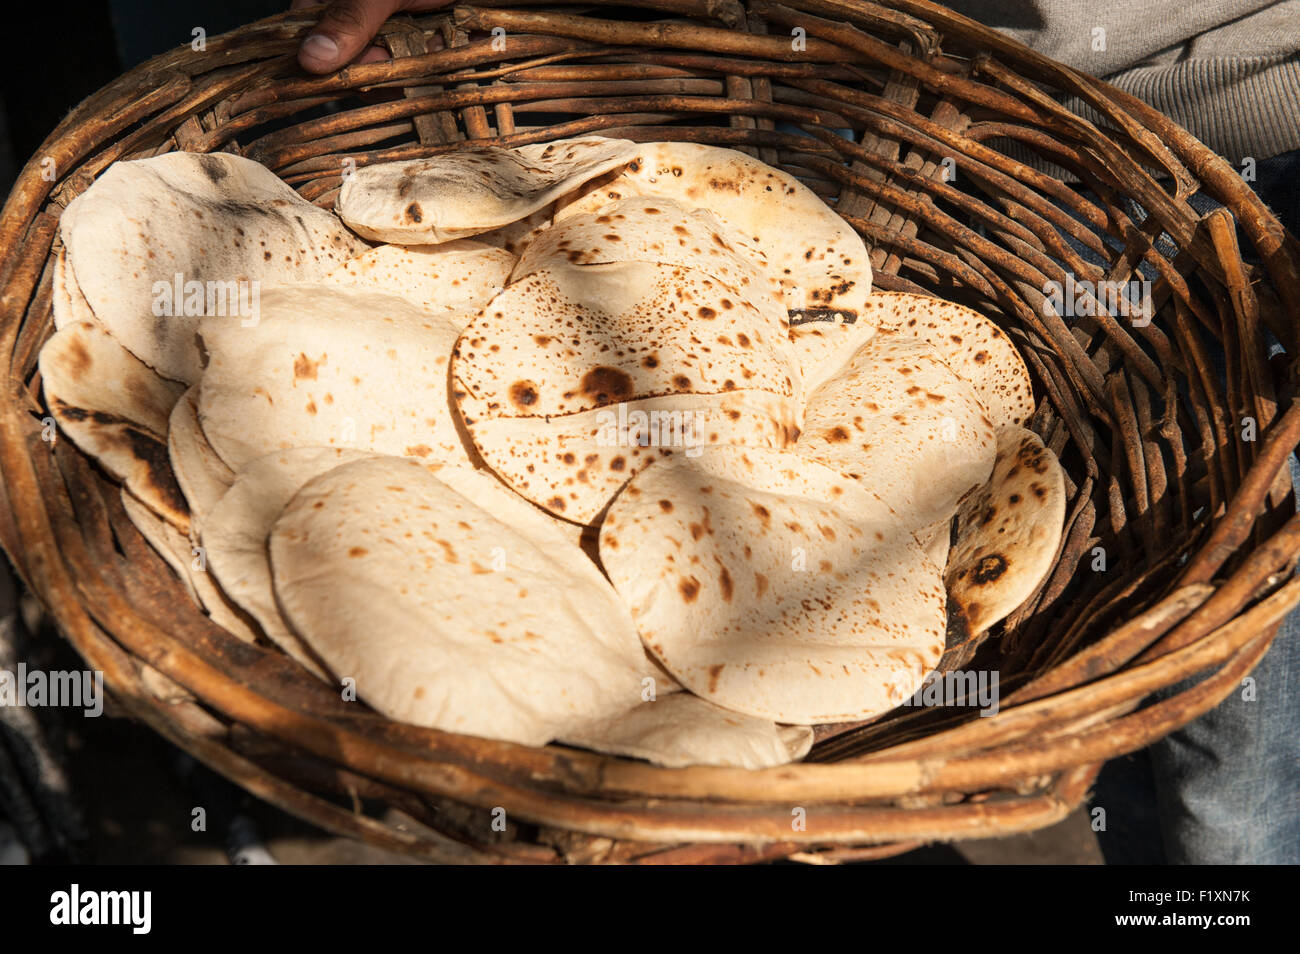 Amritsar, Punjab, en Inde. Le Temple d'Or - Harmandir Sahib ; un panier plein de chapati pain plats dans le Langar kitchen fait partie du repas qui est offert gratuitement à n'importe qui qui visite le temple gurdwara. Banque D'Images